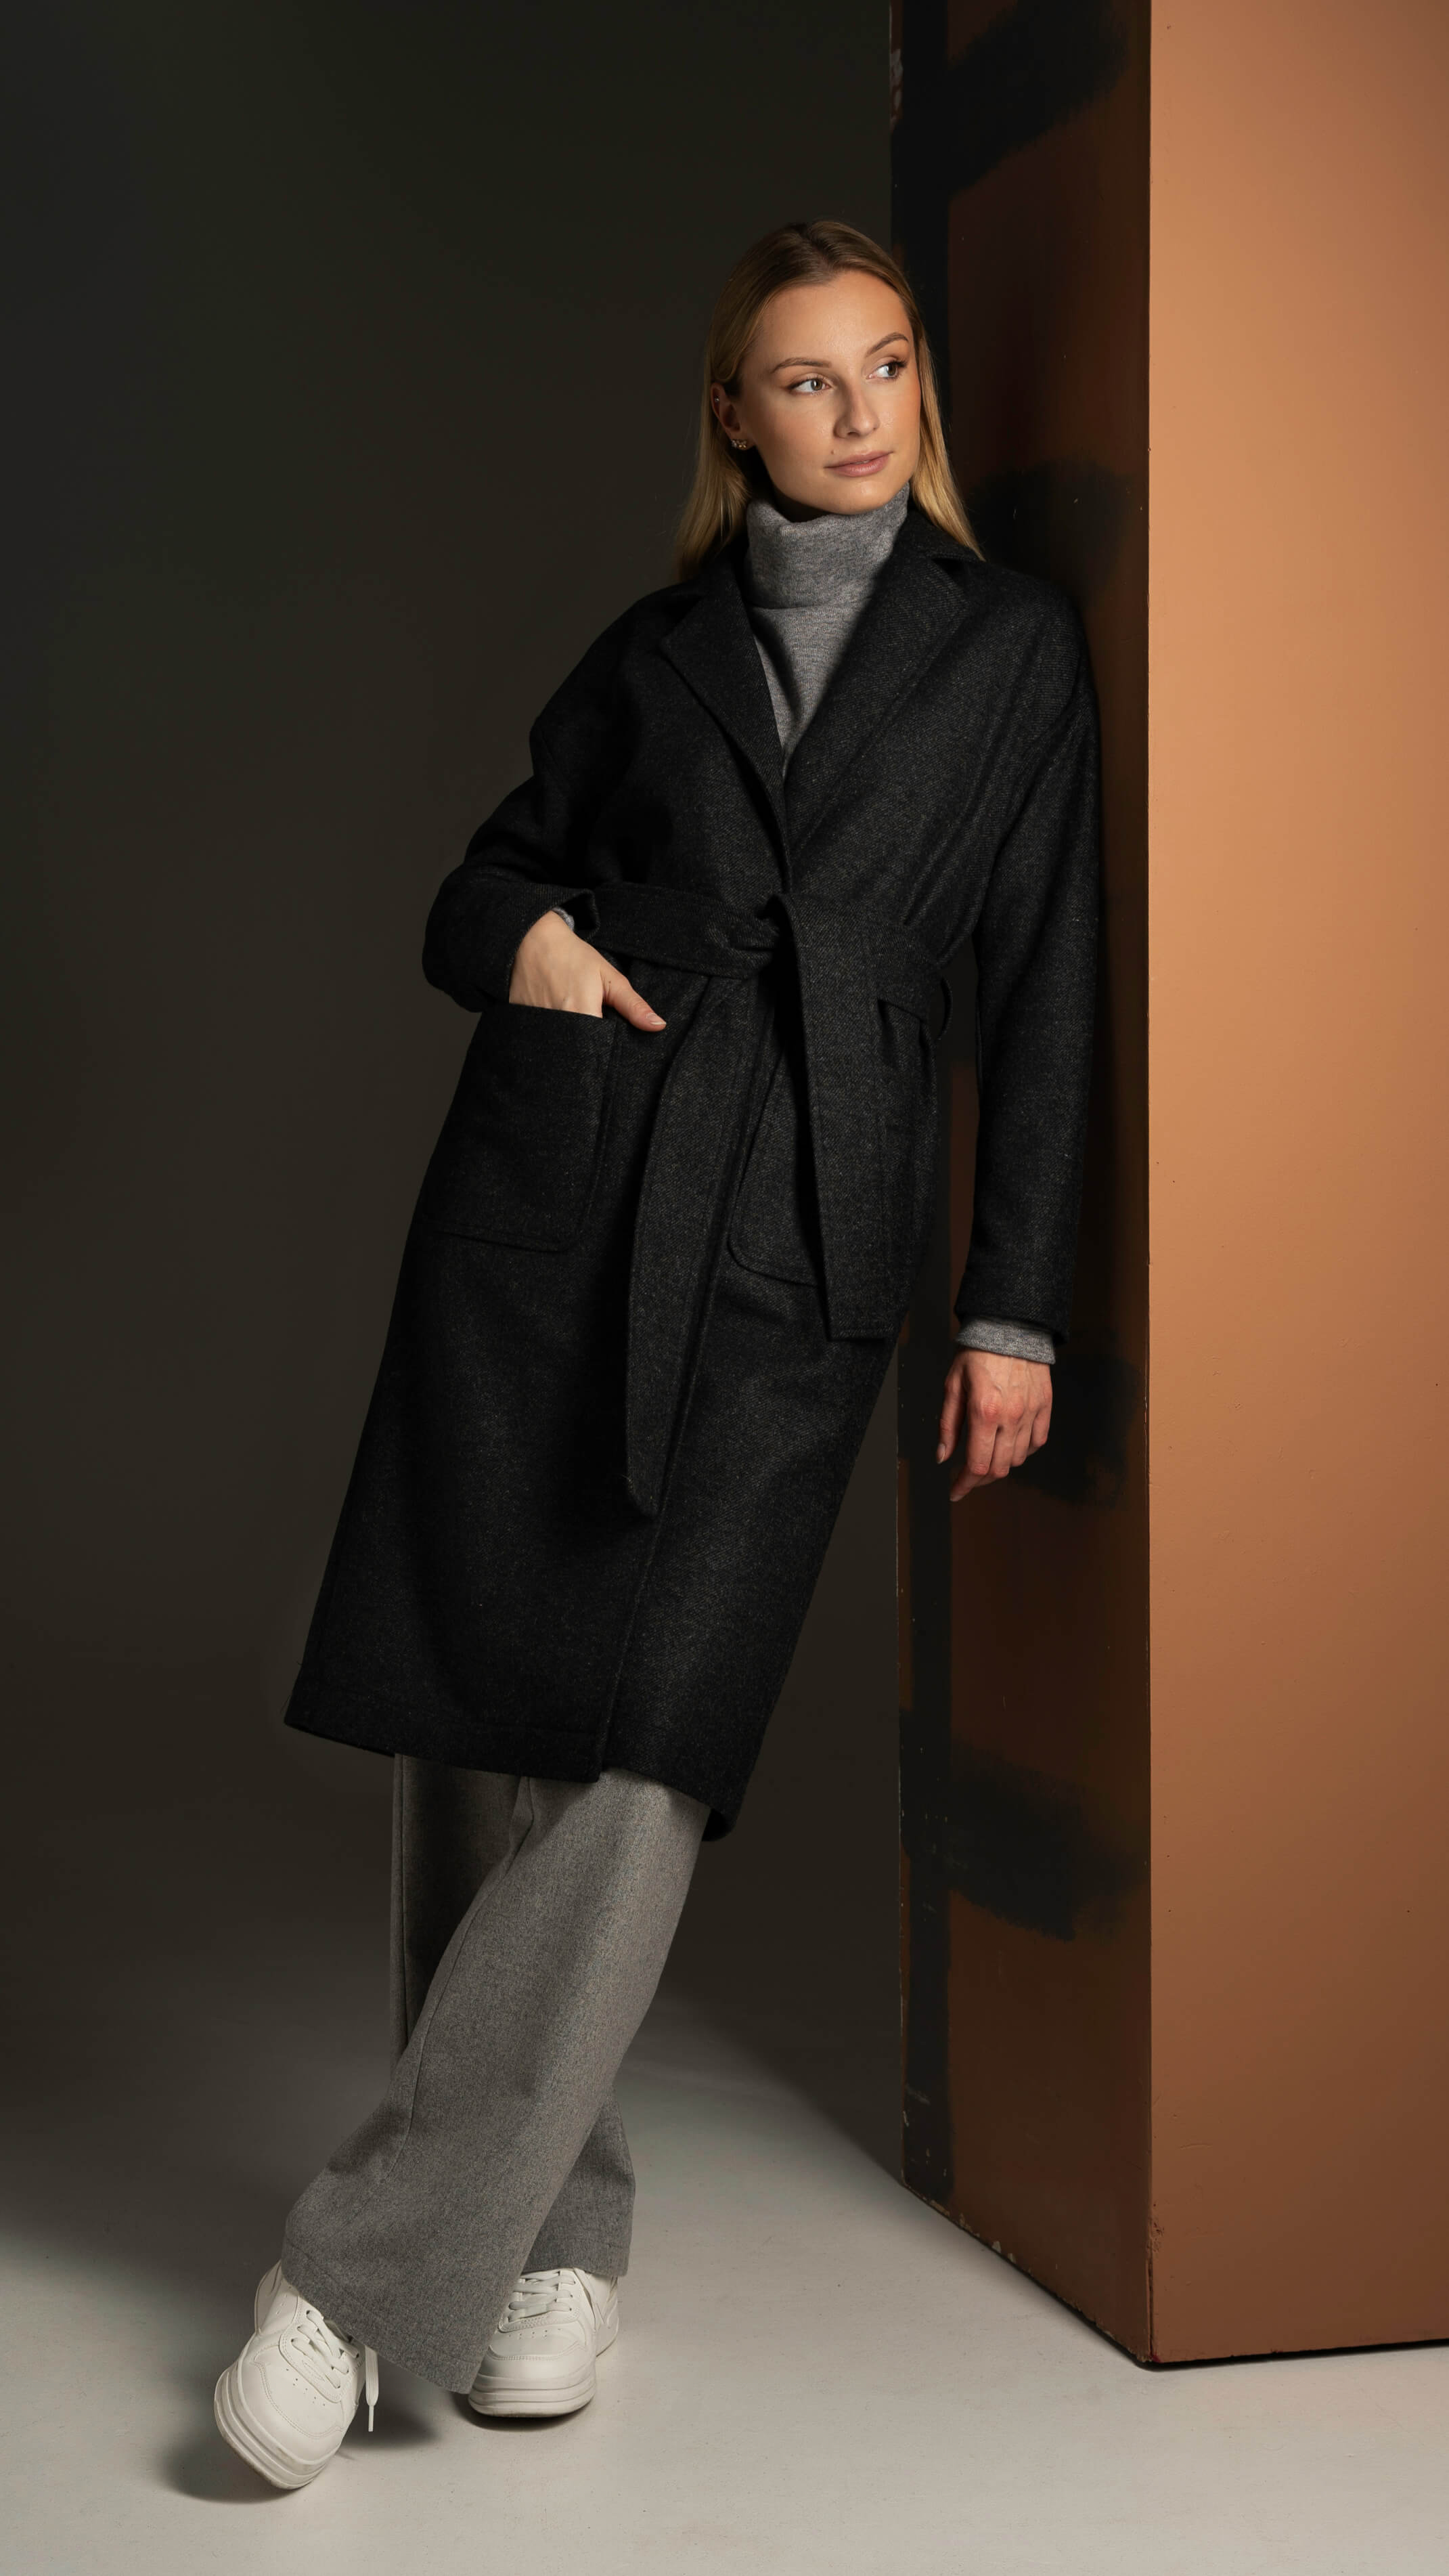 Tamsiai pilkos spalvos moteriškas ilgas paltas rudeniui ir pavasariui